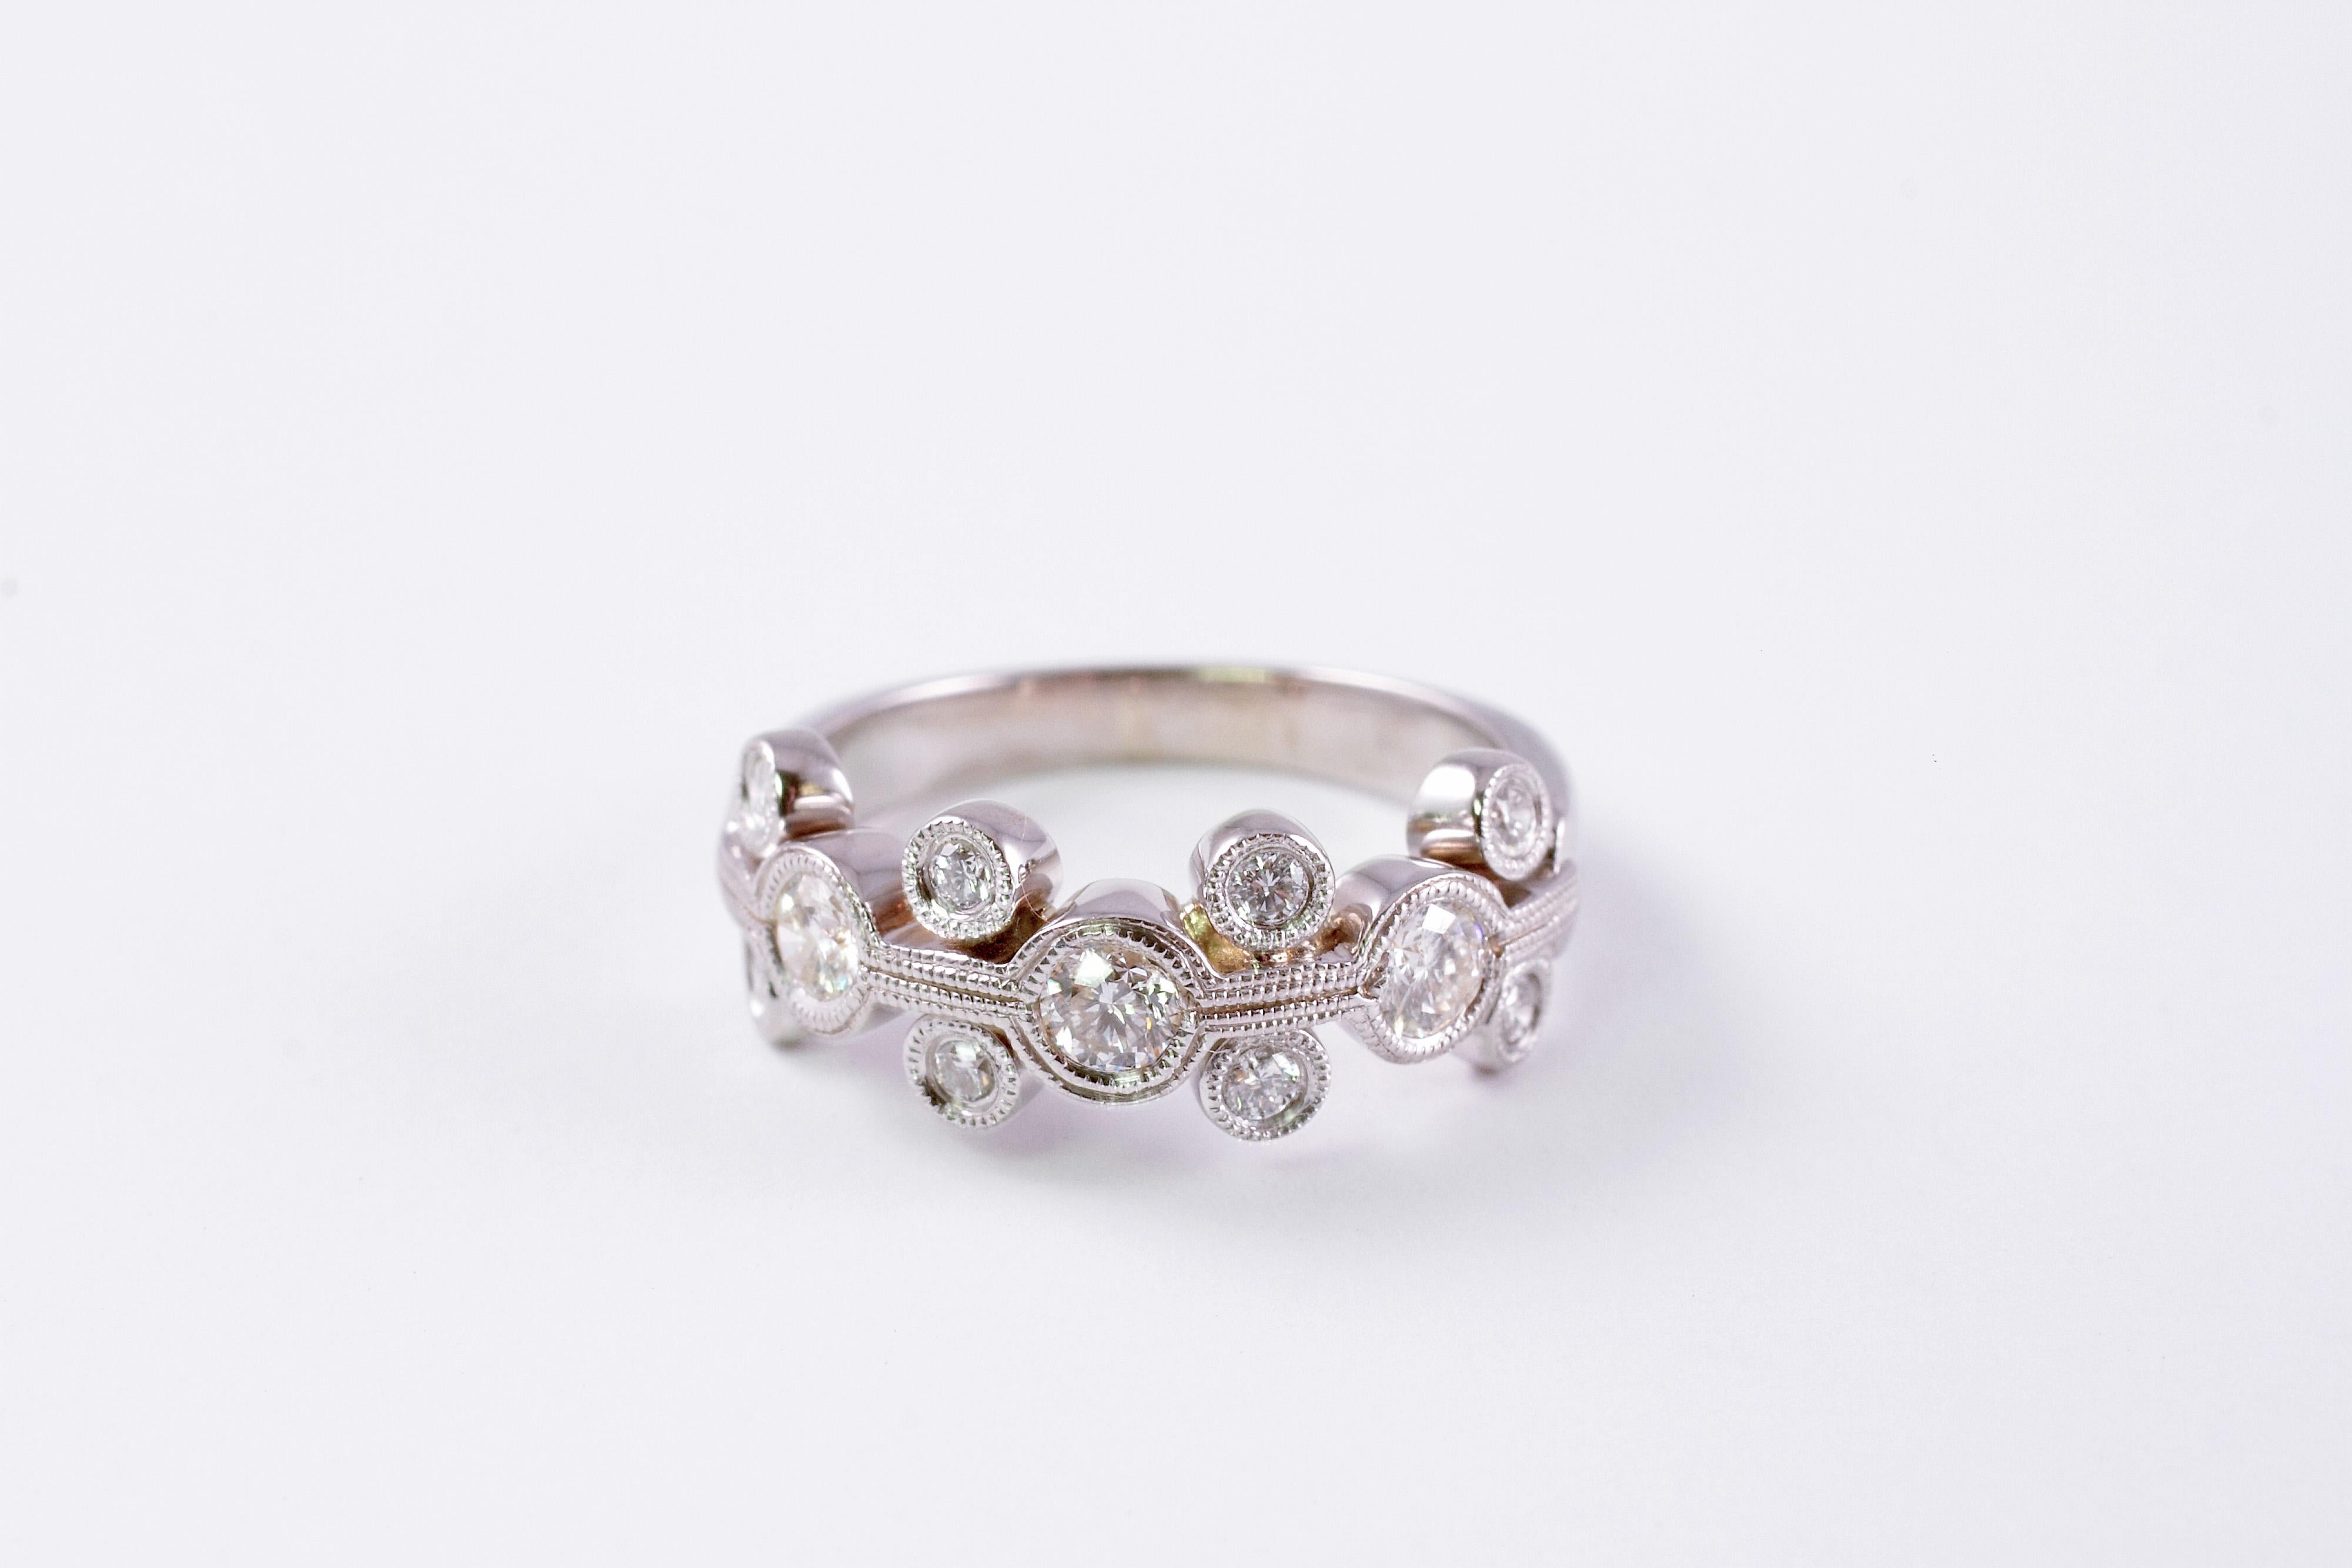 1.0 Carat Diamond Ring 18 Karat White Gold (Zeitgenössisch)